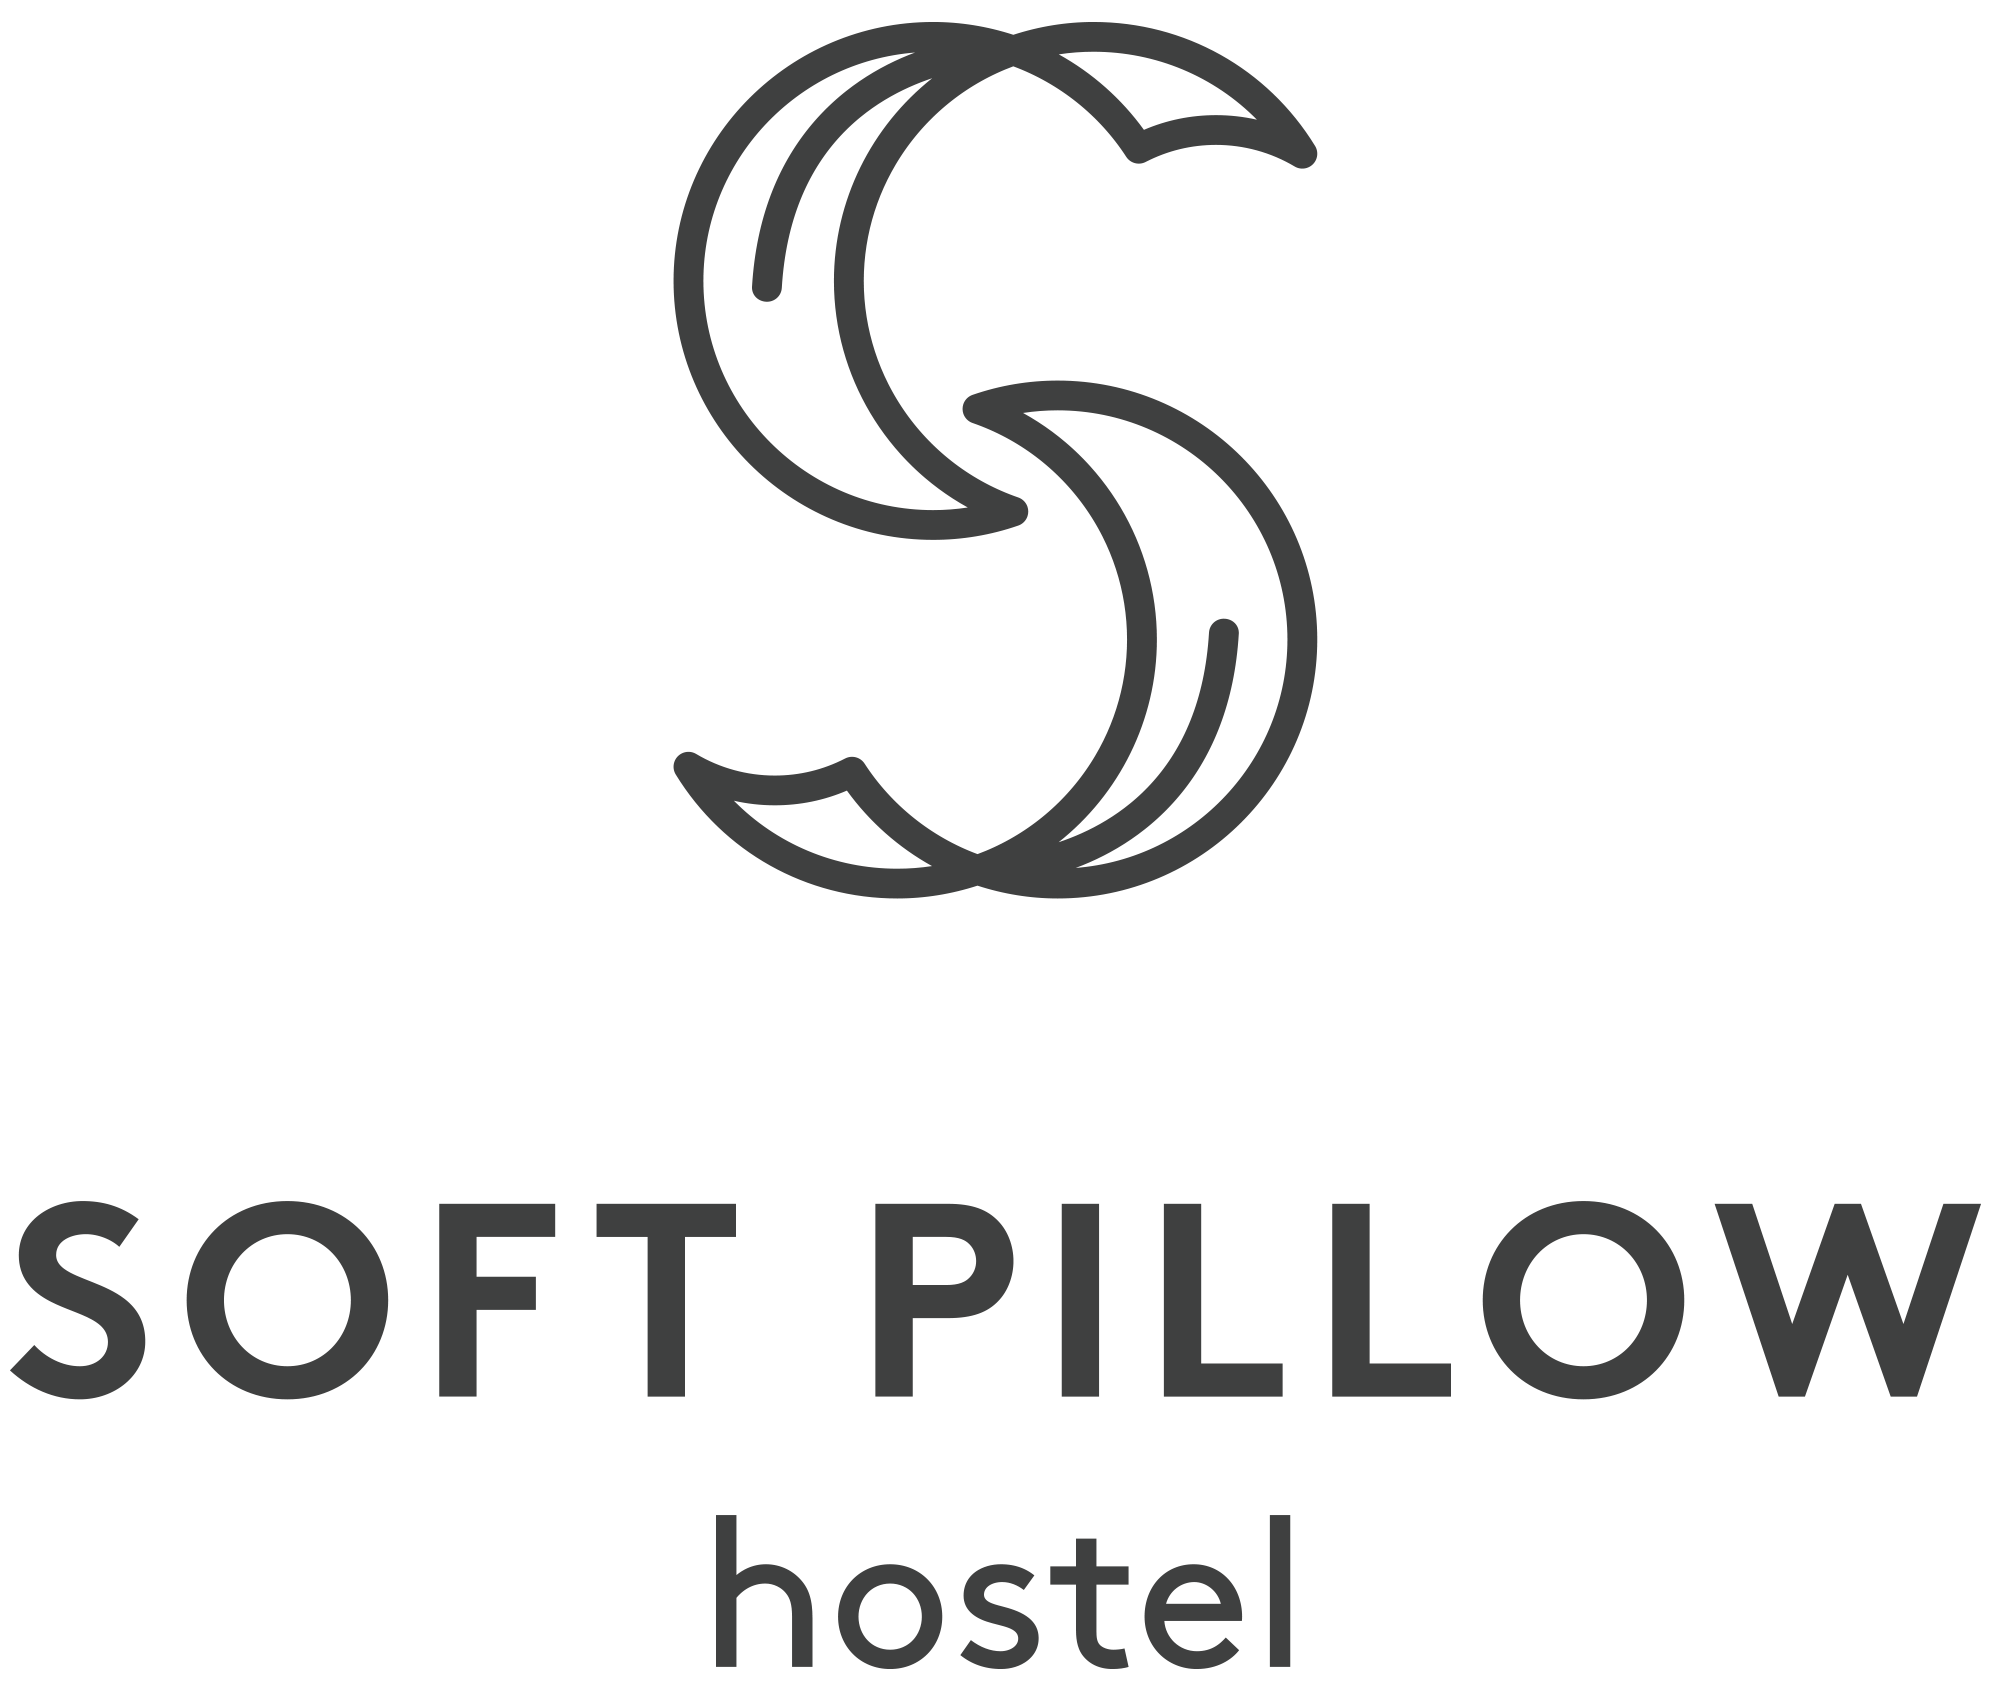 Soft Pillow Hostel